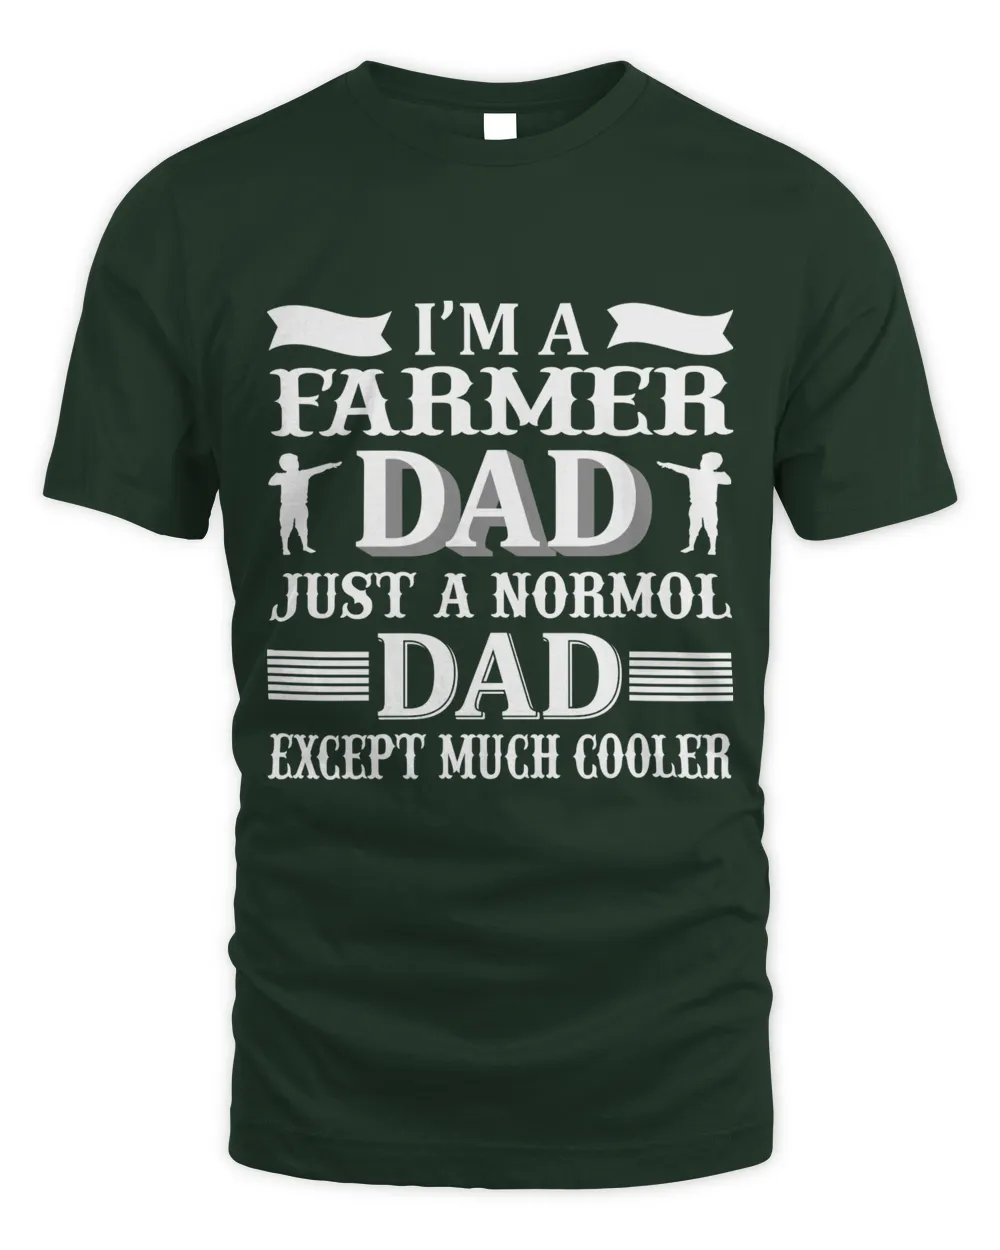 Father's Day Gifts, Father's Day Shirts, Father's Day Gift Ideas, Father's Day Gifts 2022, Gifts for Dad (79)